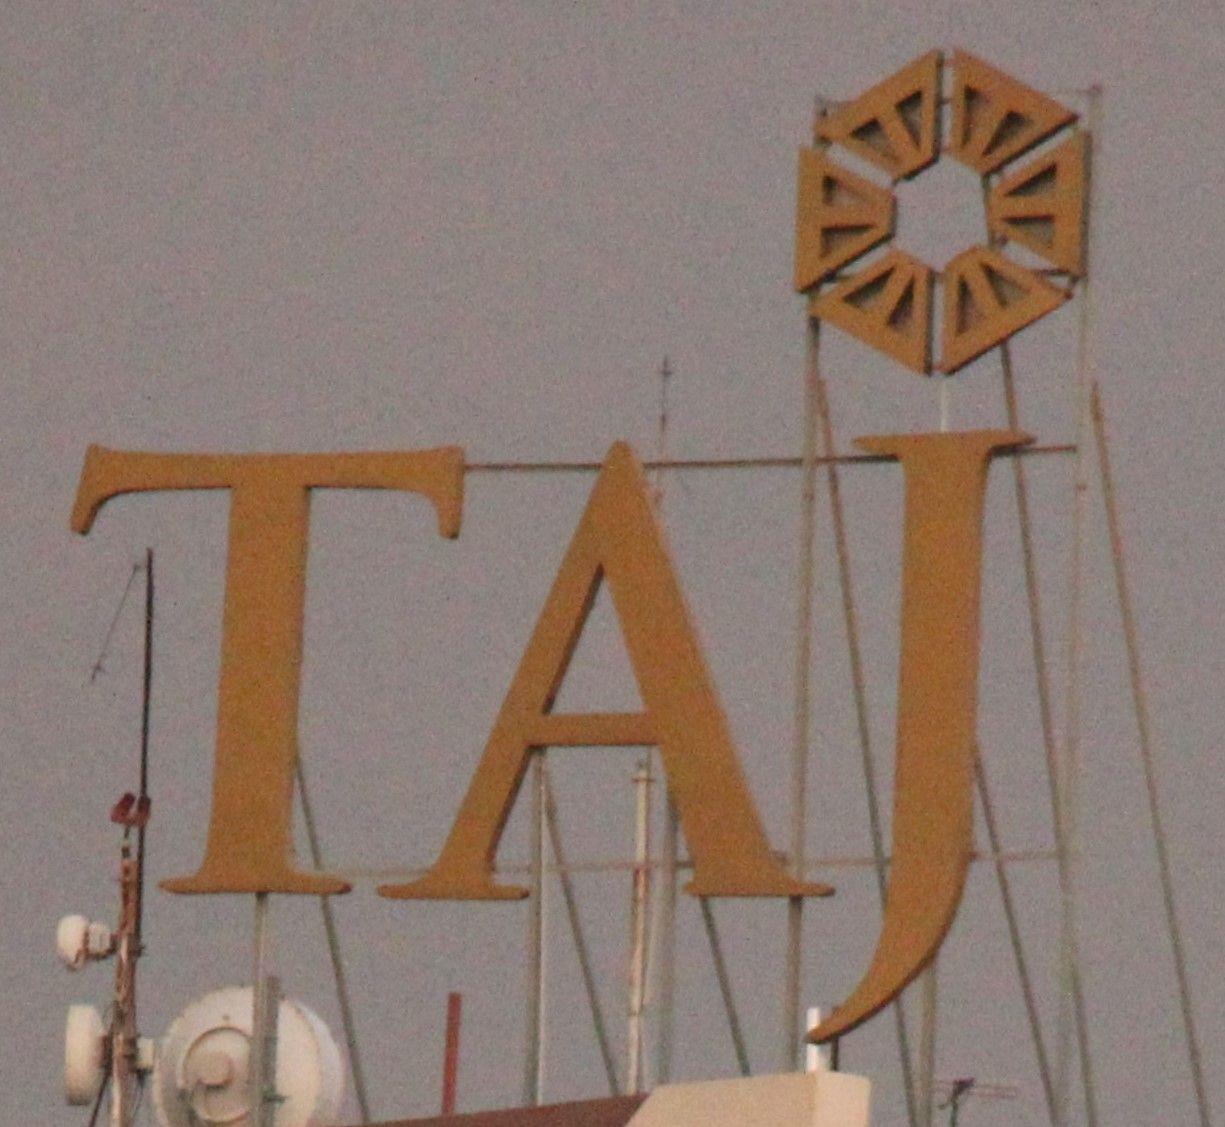 Taj Hotels Logo - Taj Hotels